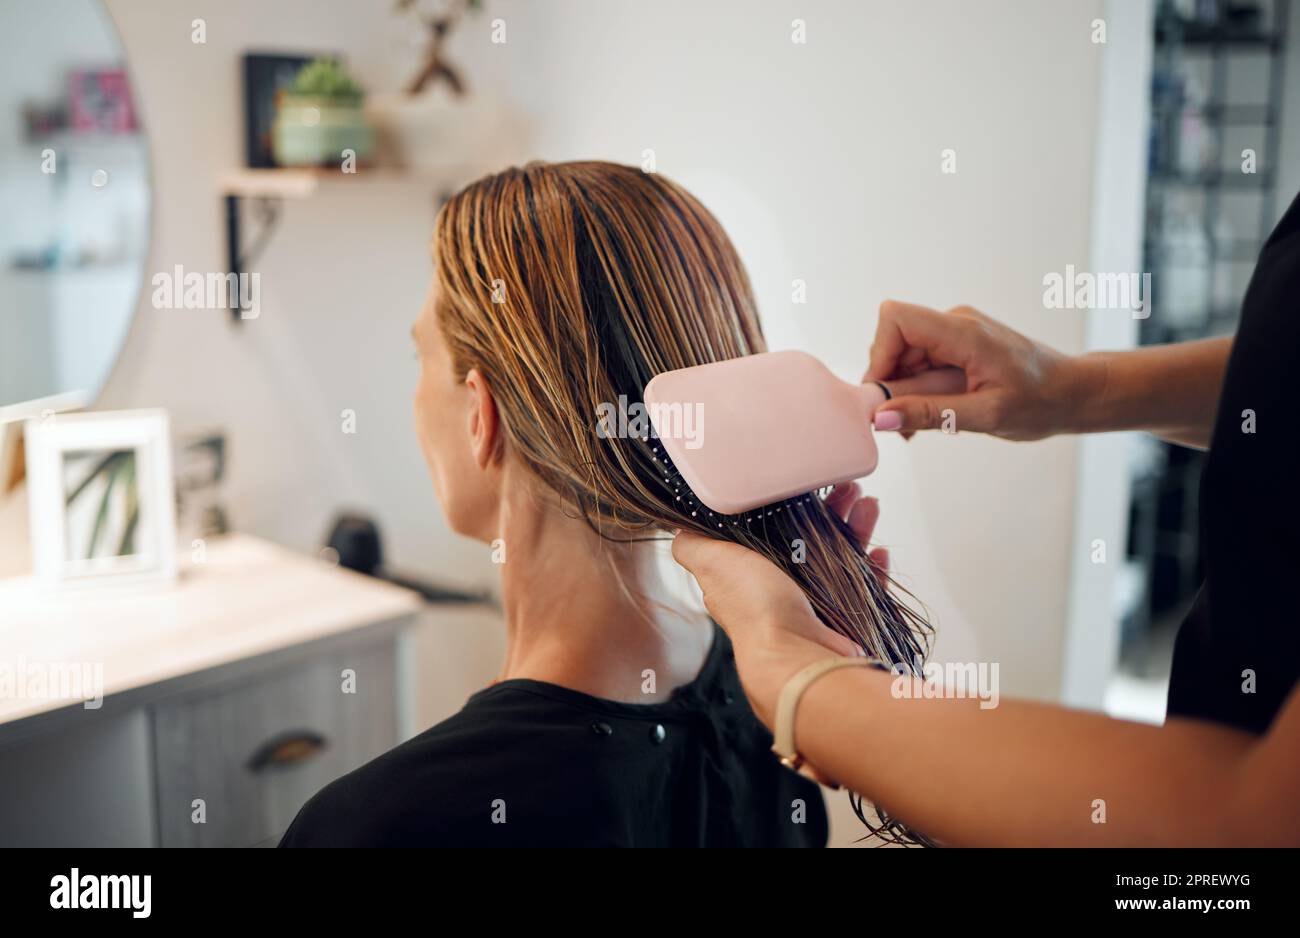 Salon de coiffure, brosse et beauté employé de coiffure travaillant sur une  femme client changement de coiffure. Employée de service, styliste et coupe  professionnelle d'une femme Photo Stock - Alamy